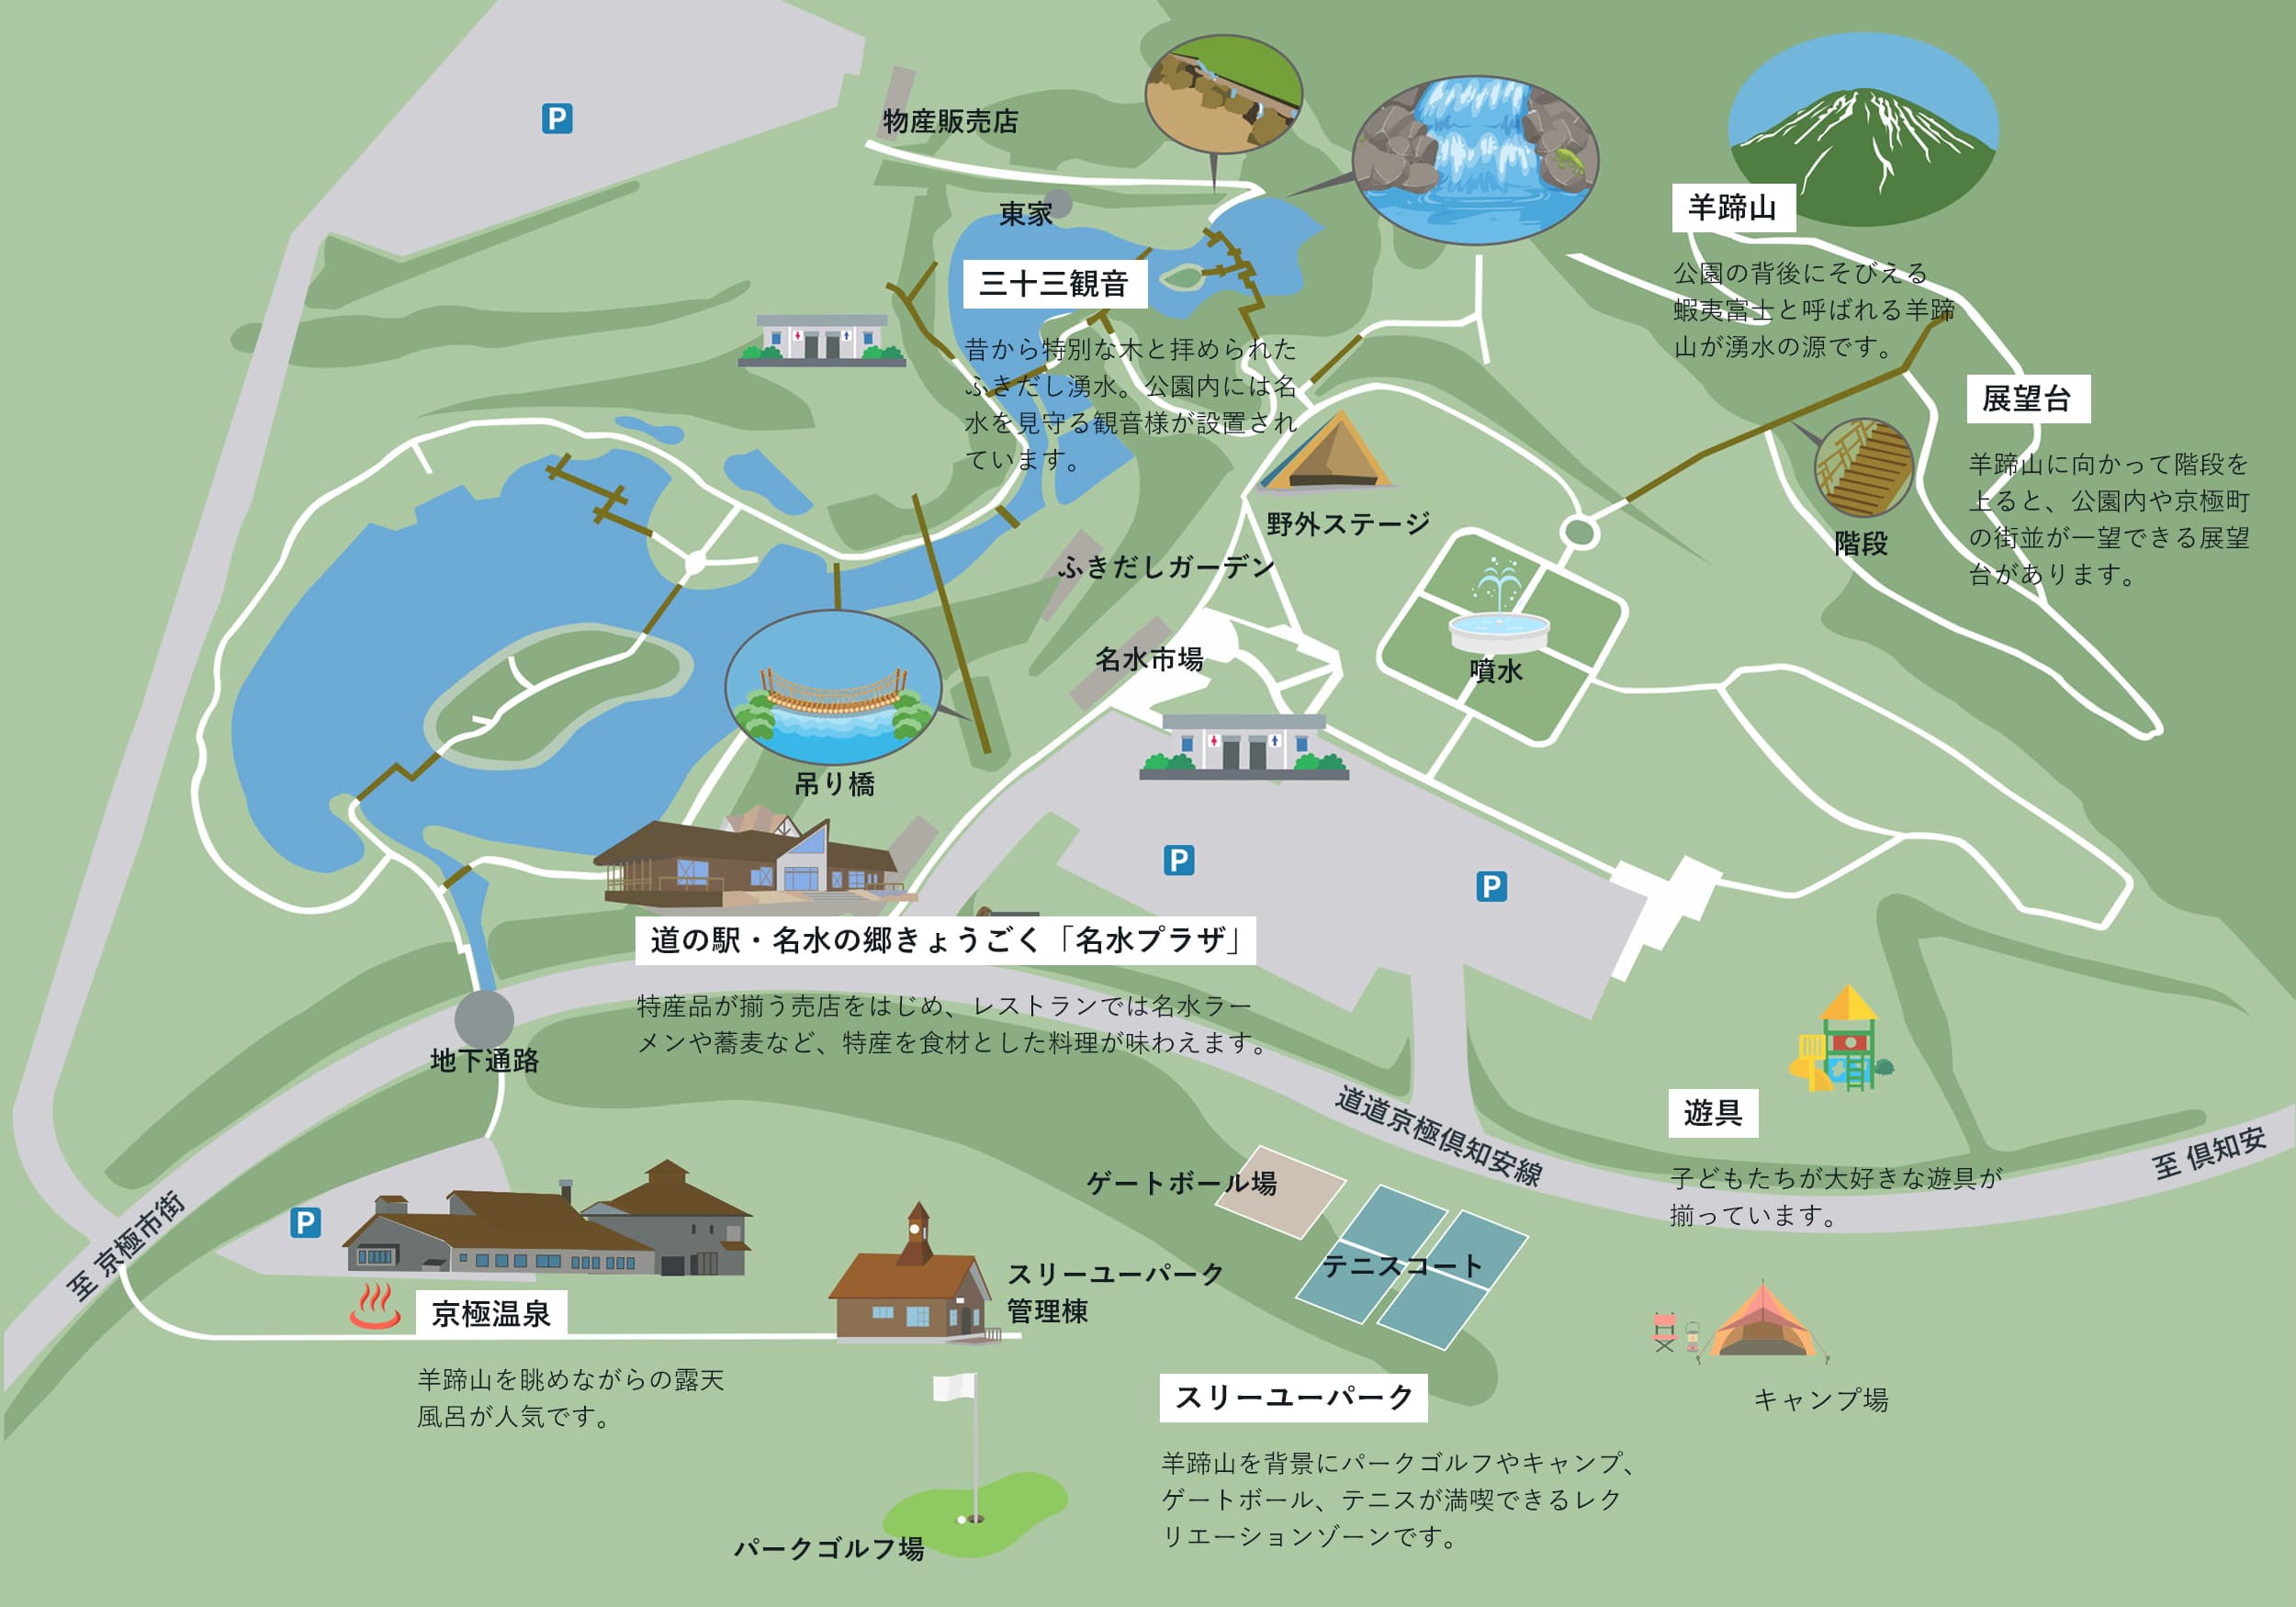 ふきだし公園 みる たのしむ 京極町観光協会